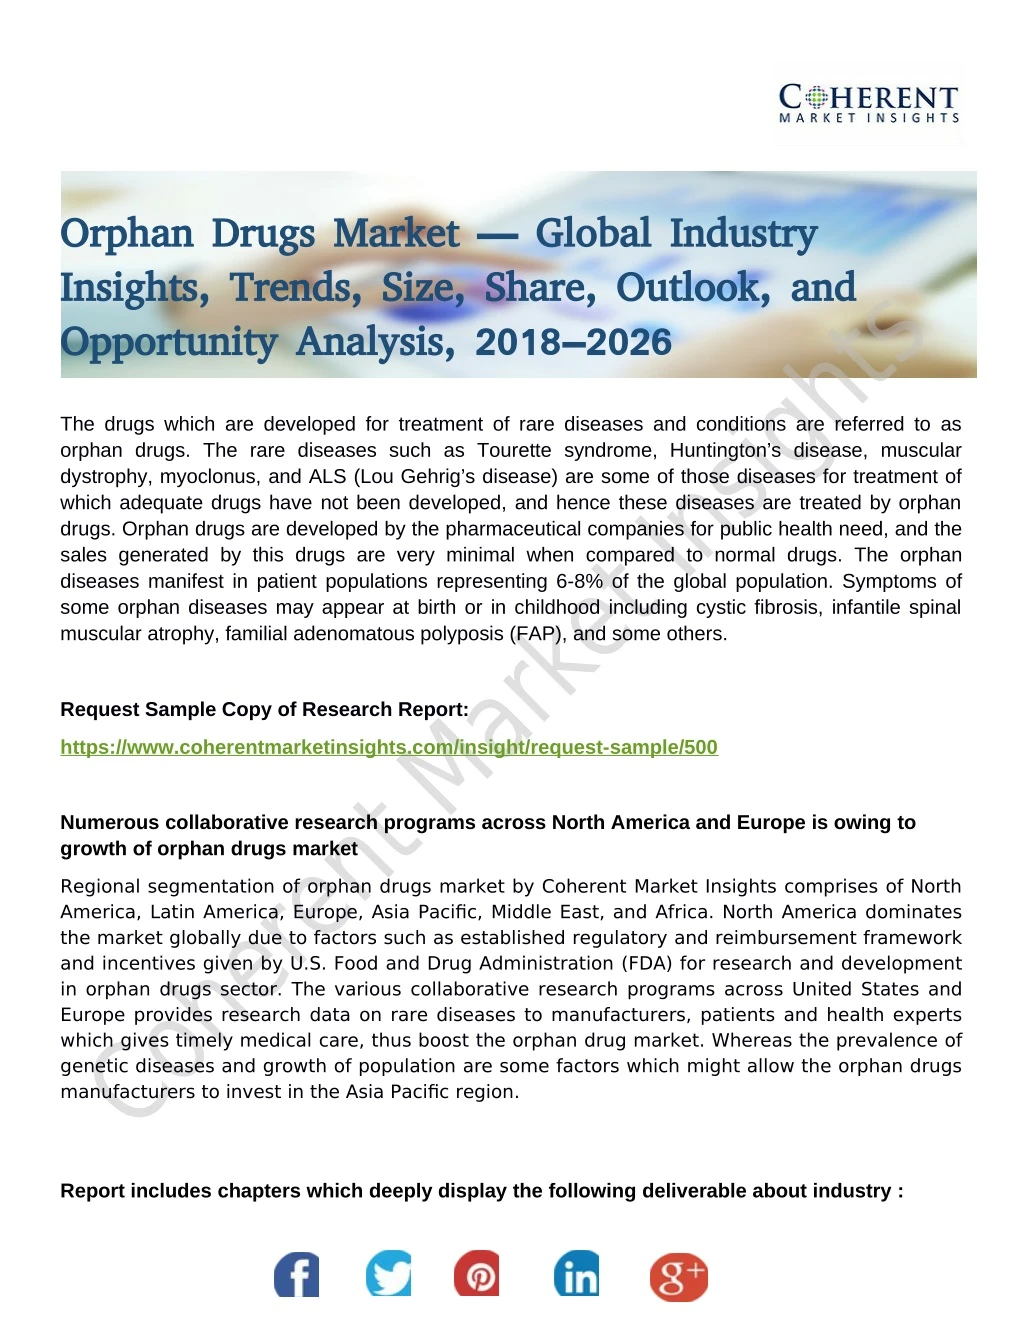 orphan drugs market global industry orphan drugs